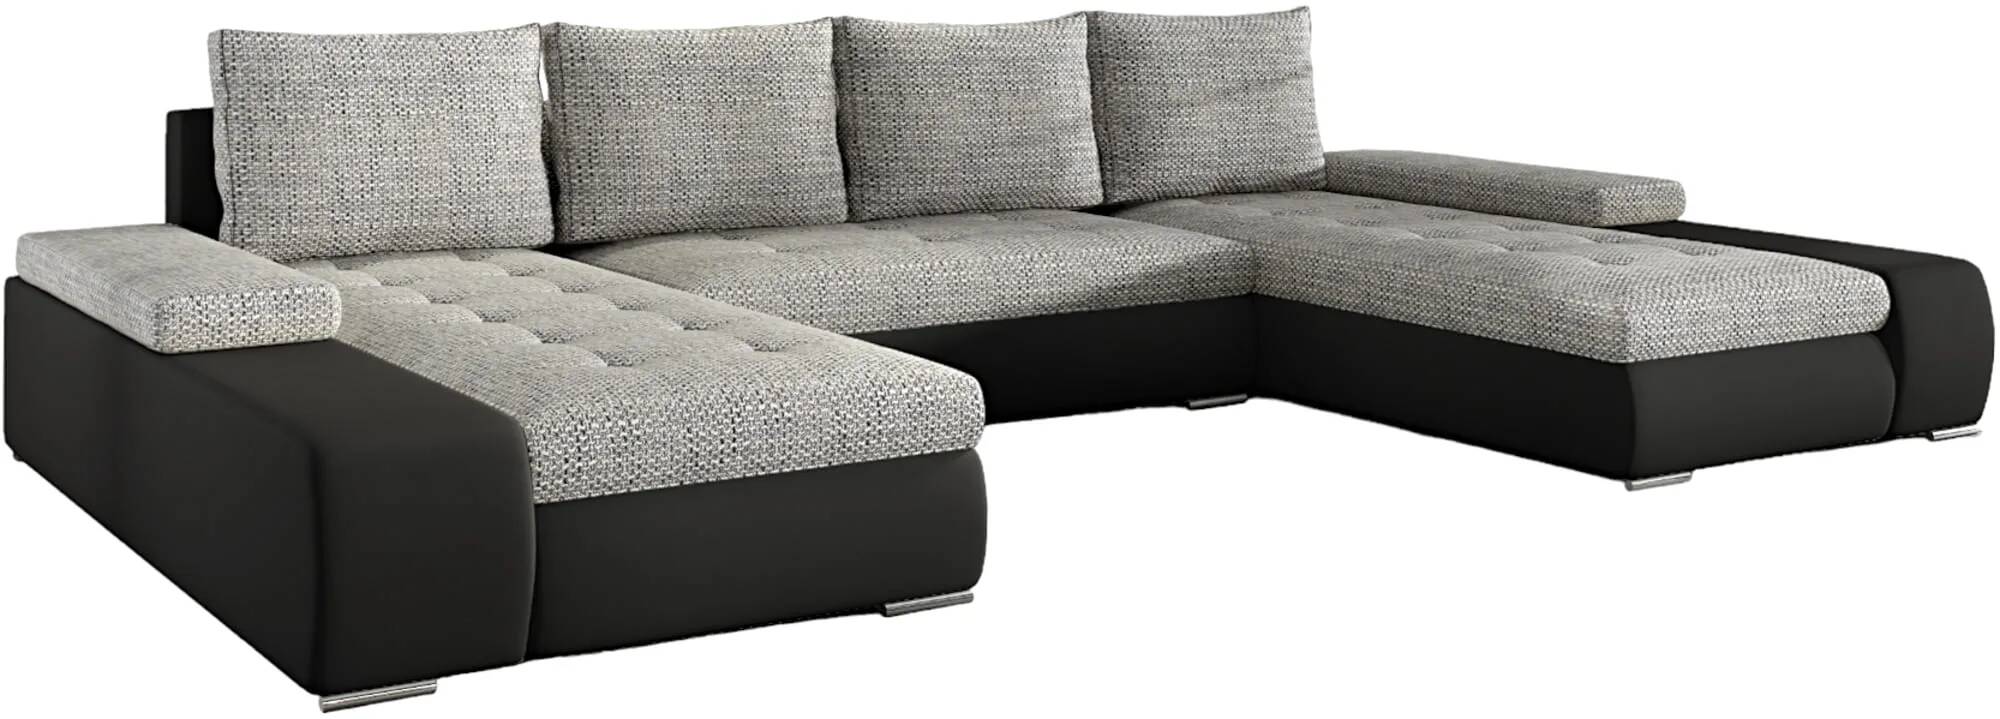 Canapé d'angle convertible en tissu chiné gris clair et simili cuir noir